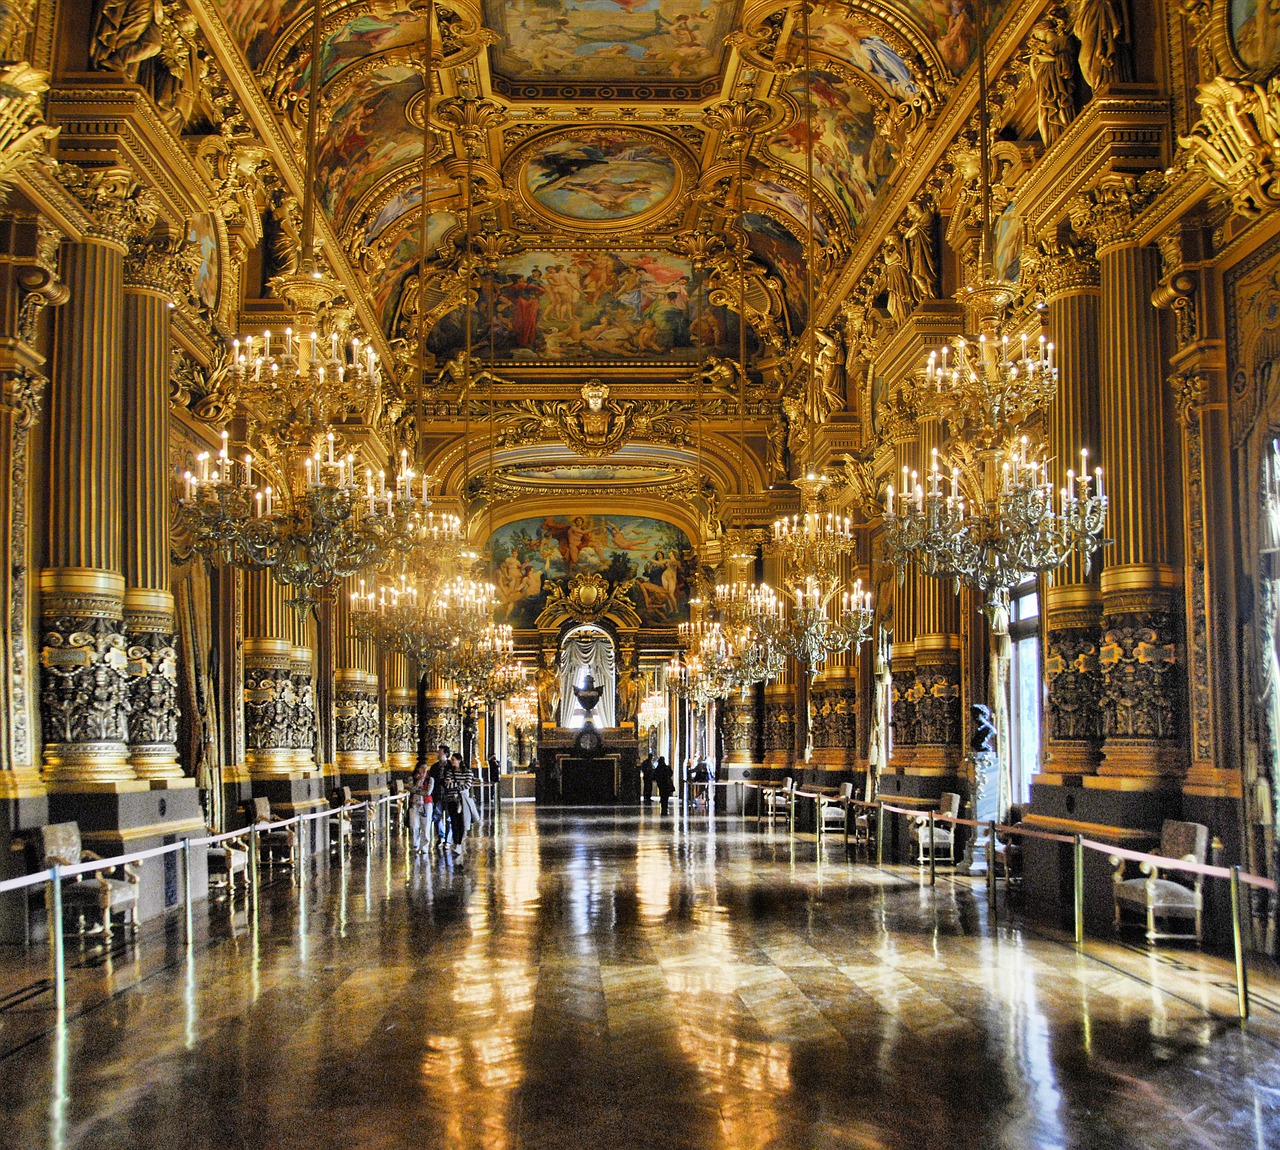 Paris, Opera, France, Garnier, Žinomas, Prancūzų Kalba, Pastatas, Orientyras, Barokas, Ornate